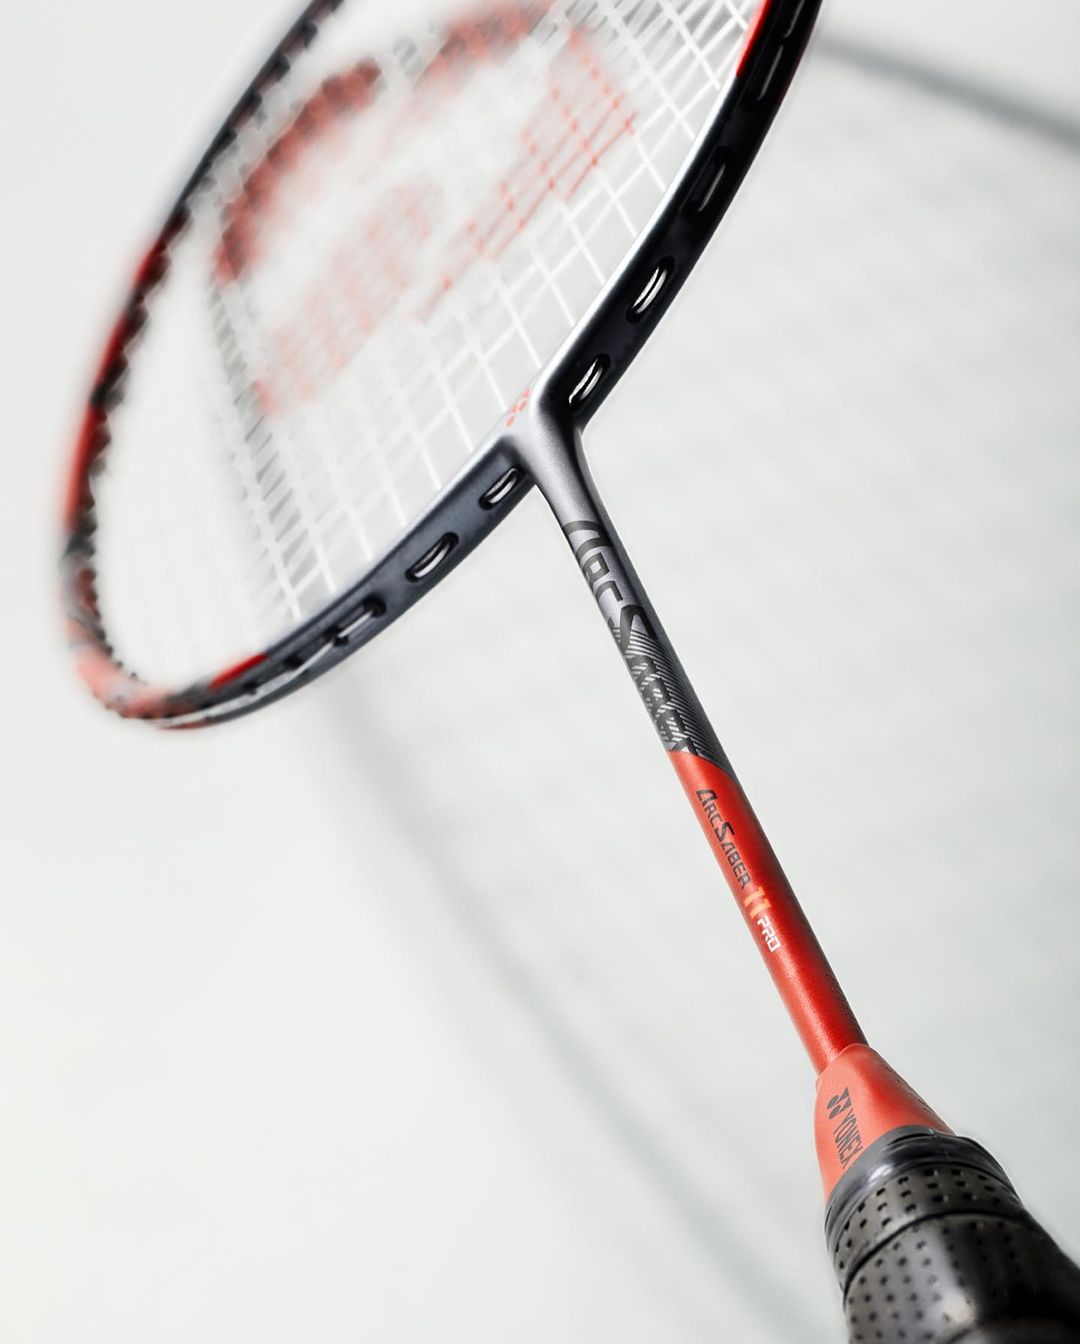 Yonex Arcsaber 11 Tour (Grayish Pearl) Badminton Racket